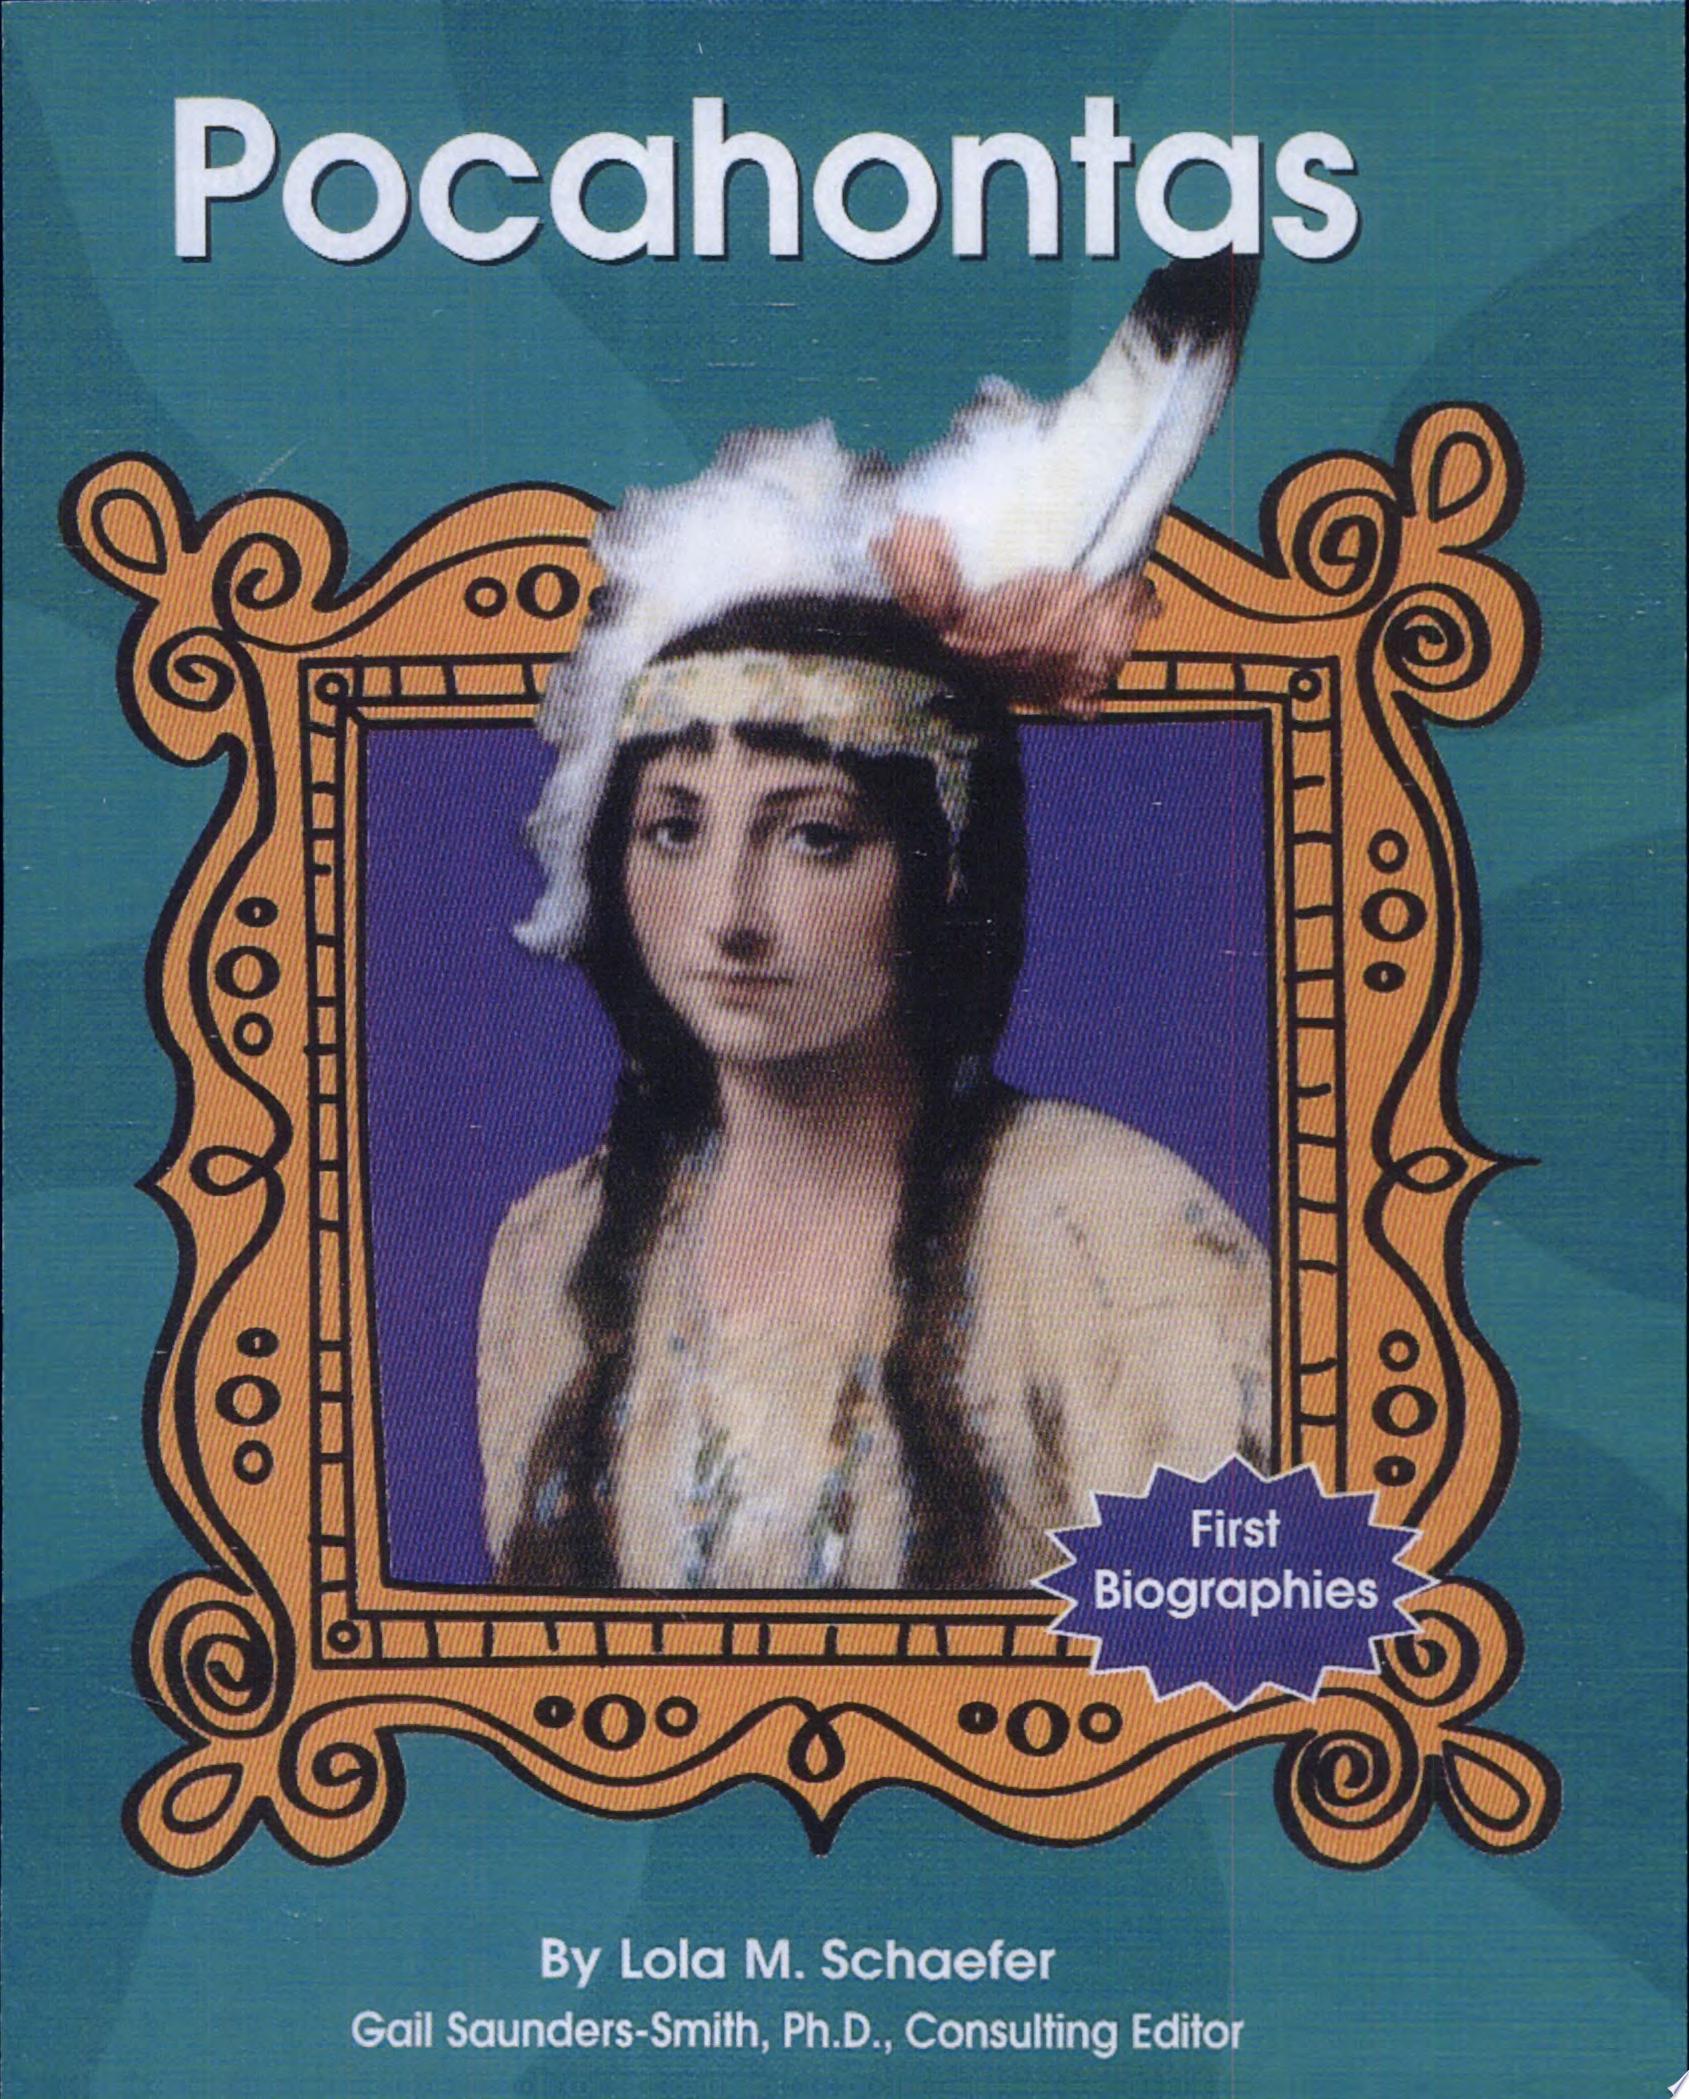 Image for "Pocahontas"